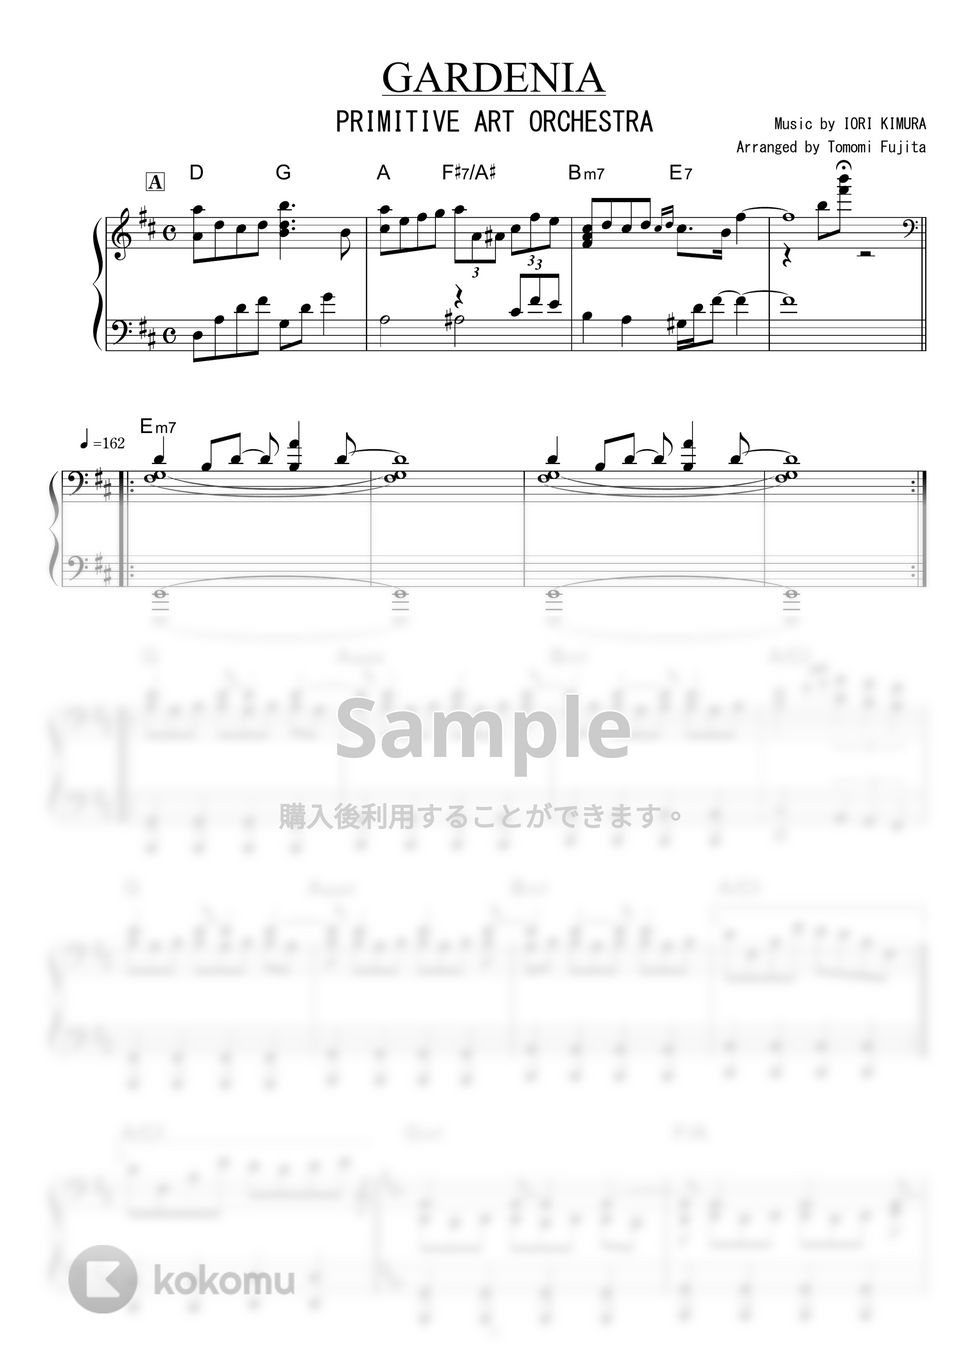 PRIMITIVE ART ORCHESTRA - GARDEMIA by piano*score